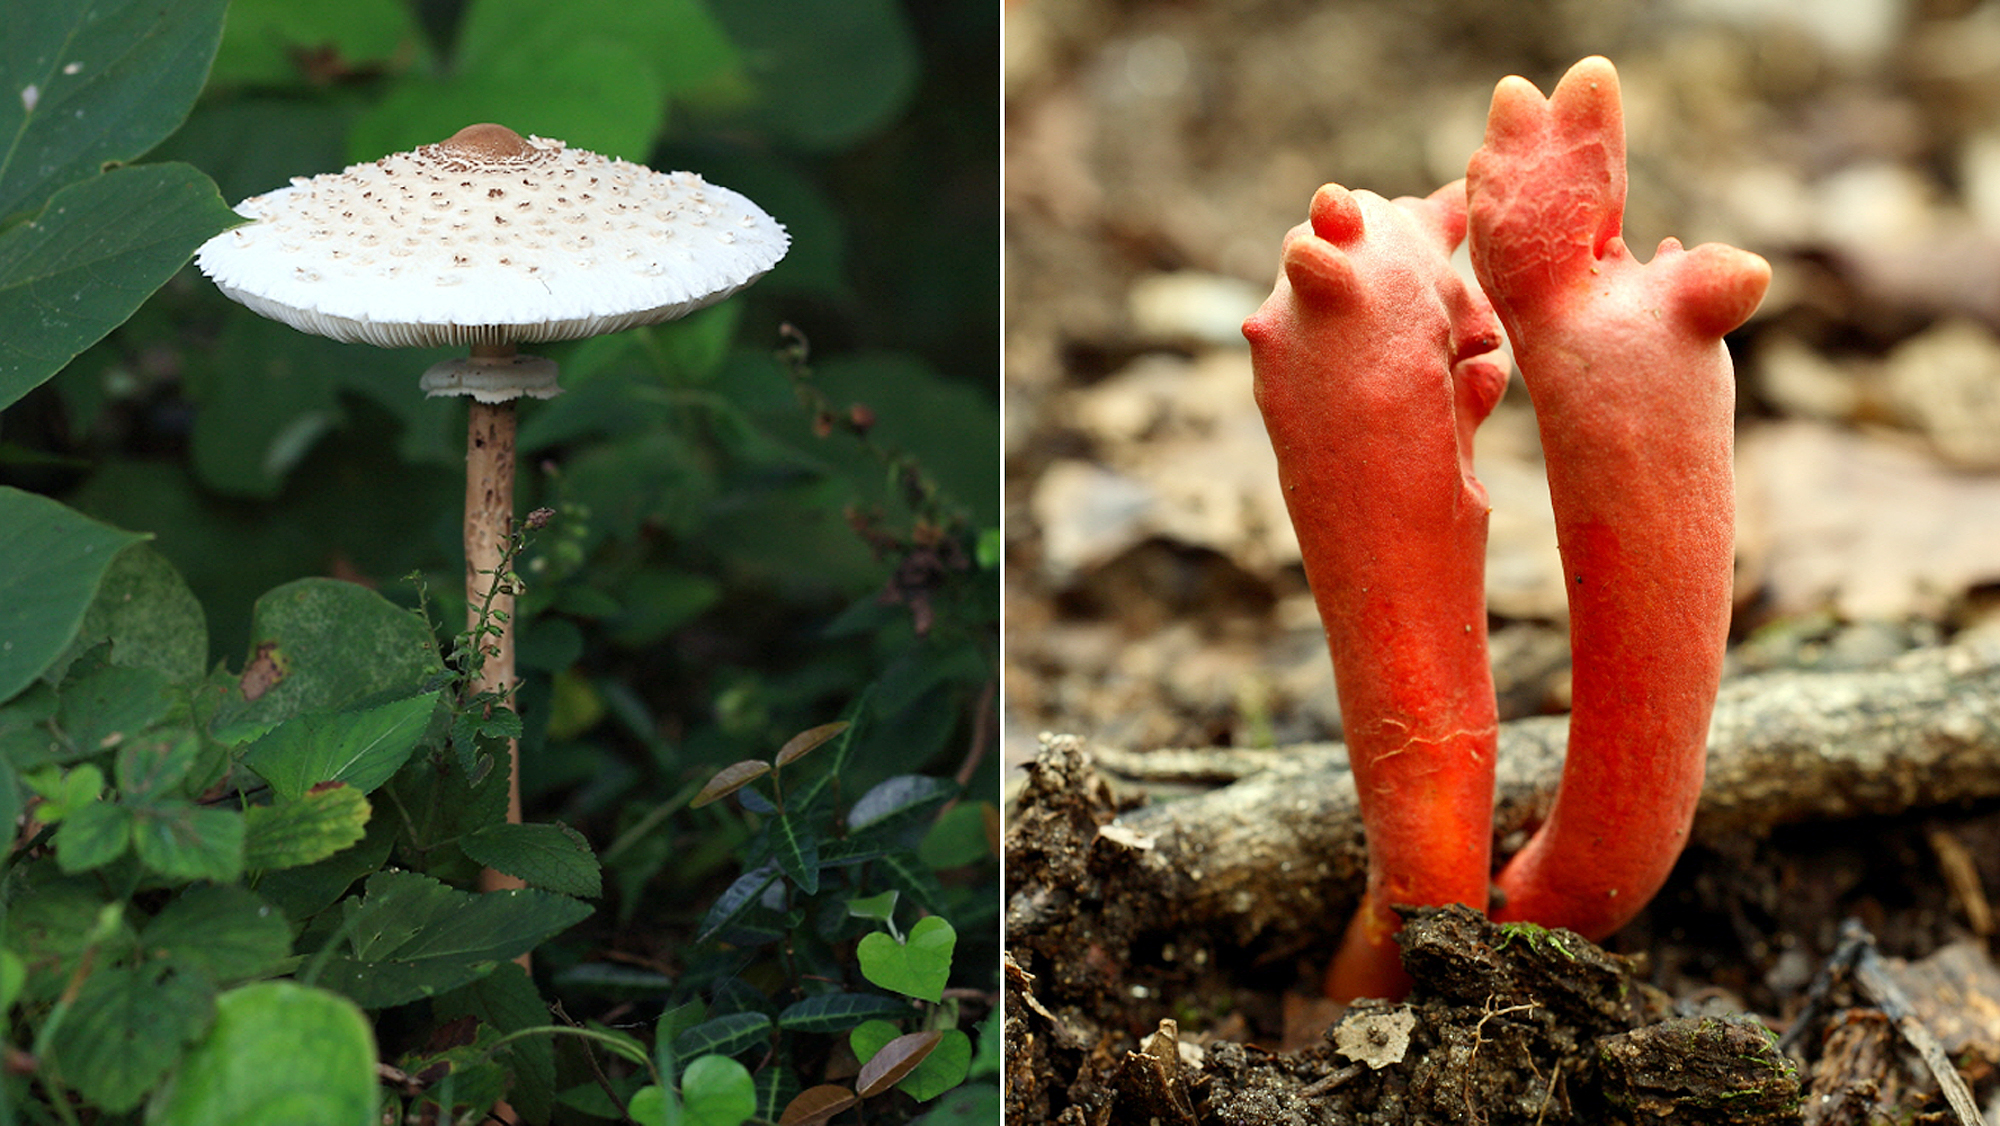 식용버섯으로 잘 알려진 ‘큰갓버섯’(왼쪽)은 생긴 모양으로 한꺼번에 구분했으나 일부에서 DNA 차이가 확인돼 다른 종으로 분류됐다.  독버섯으로 분류된 ‘붉은사슴뿔버섯’(오른쪽)은 어린 시기 영지(불로초)와 모양이 비슷해 종종 중독사고를 일으킨다. 이 버섯은 사슴뿔버섯 종류에서 트리코데르마(Trichoderma) 종류로 변경됐다.  국립수목원 제공